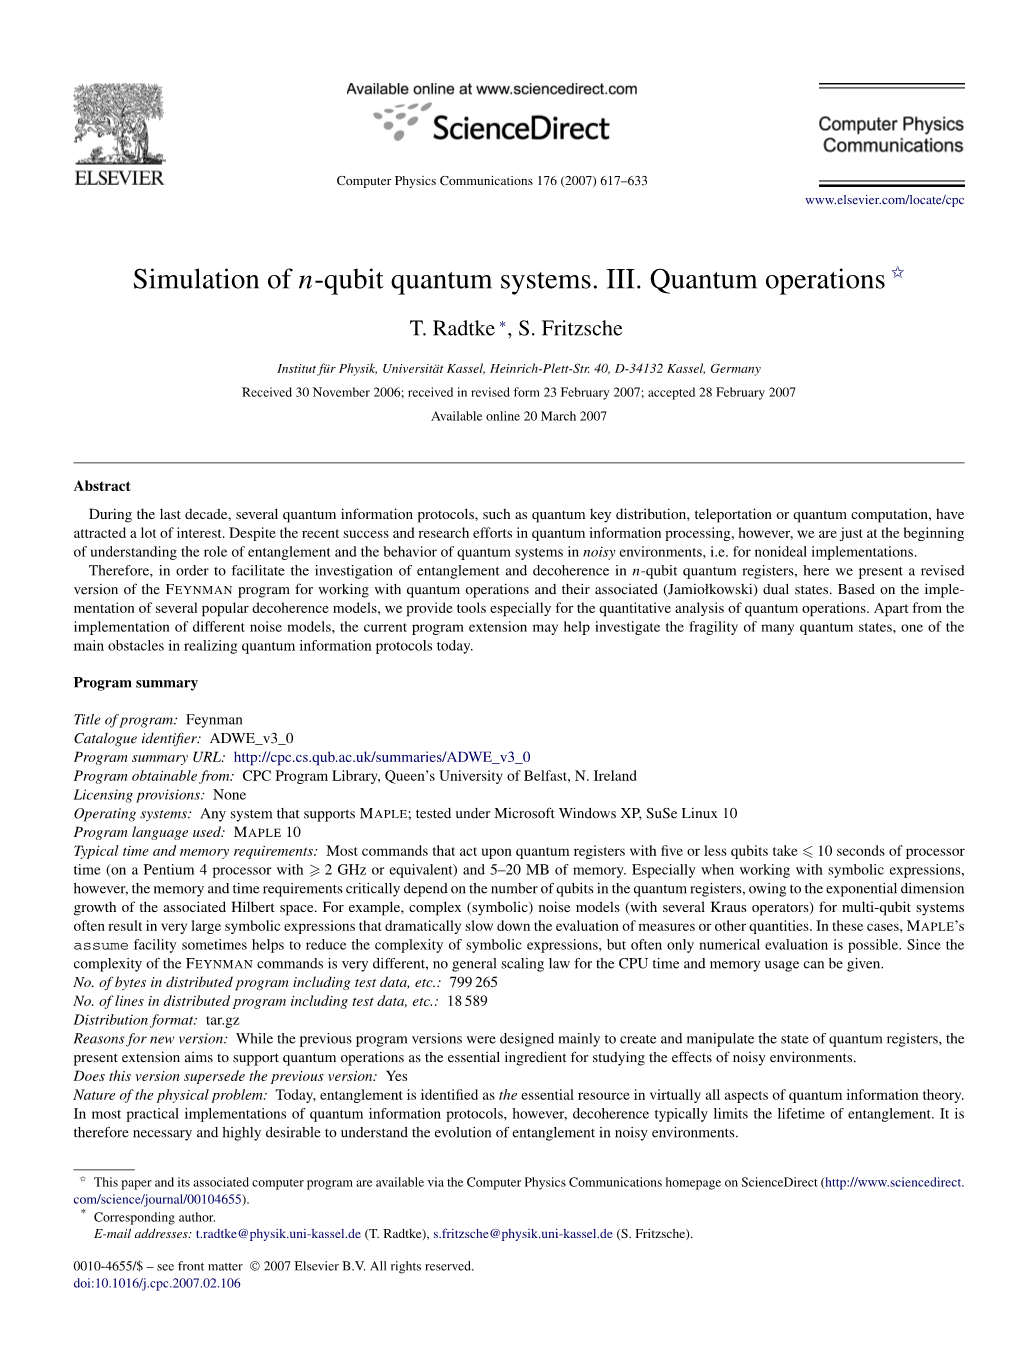 III. Quantum Operations ✩